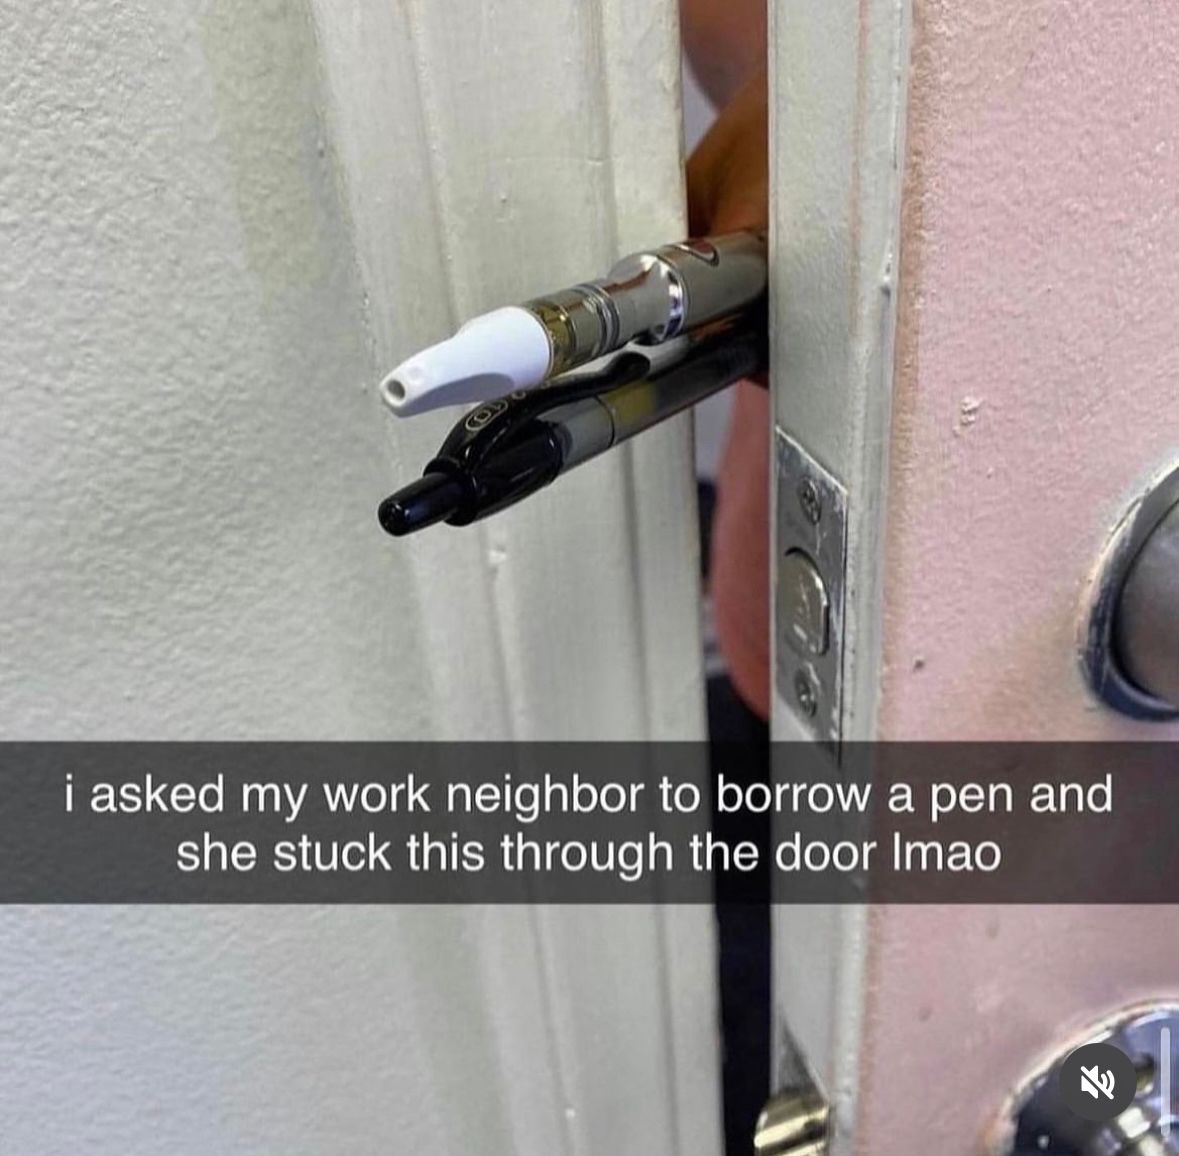 I need this kinda neighbor